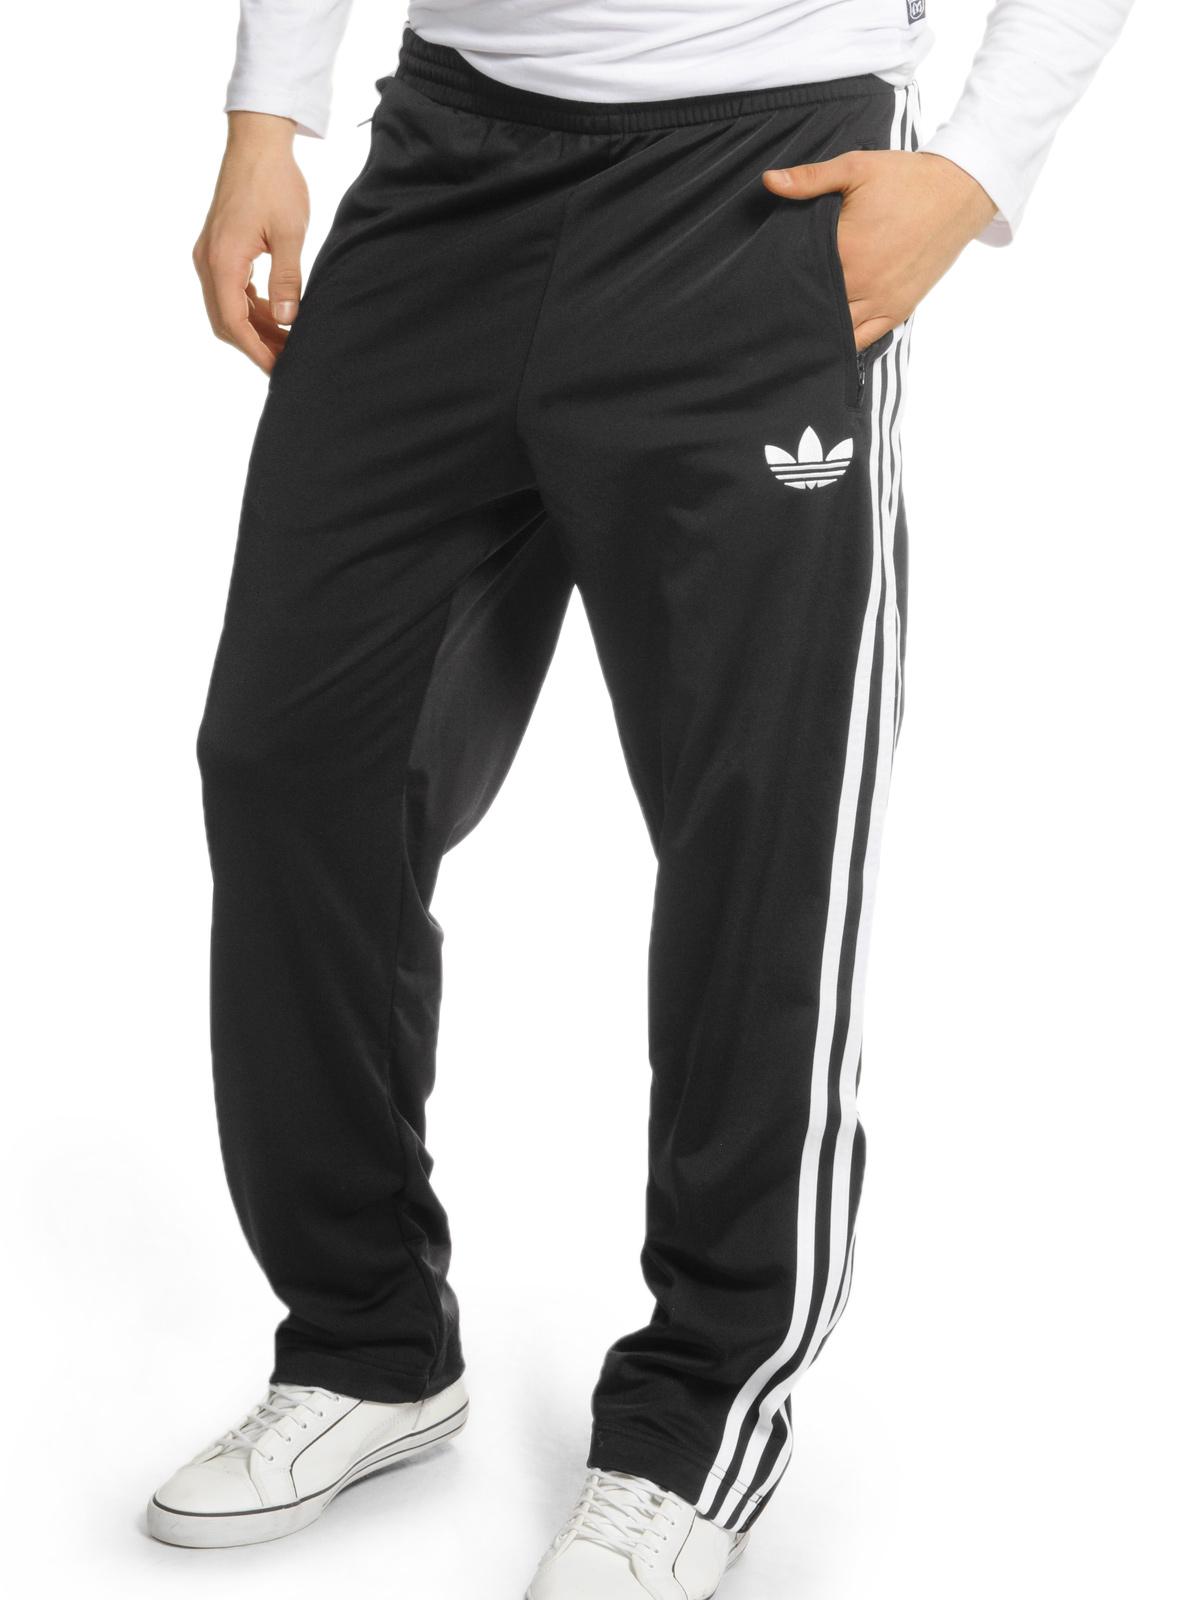 Foto Adidas Firebird pantalón deportivo negro XL